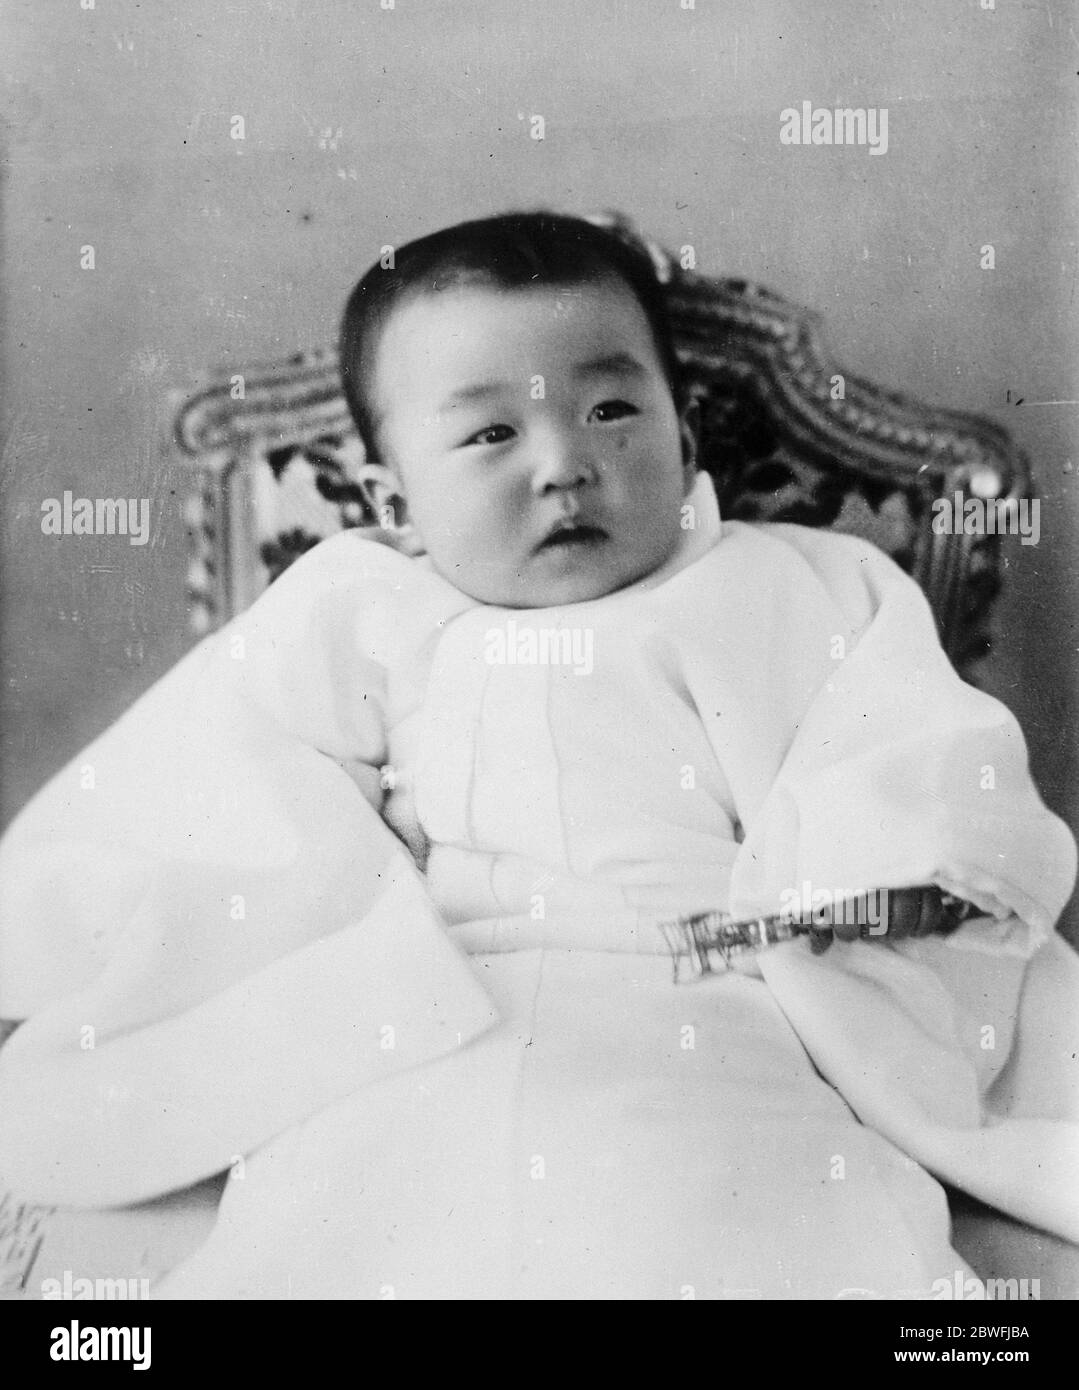 Japan 's Royal Baby . HIH Prinzessin Shigeko Terunomiya, das einzige Kind von Tim der Kaiser und Kaiserin von Japan, fotografiert an ihrem ersten Geburtstag. 24. Januar 1927 Shigeko Higashikuni - ältere Schwester von Kaiser Hirohito und starb 1961 Stockfoto